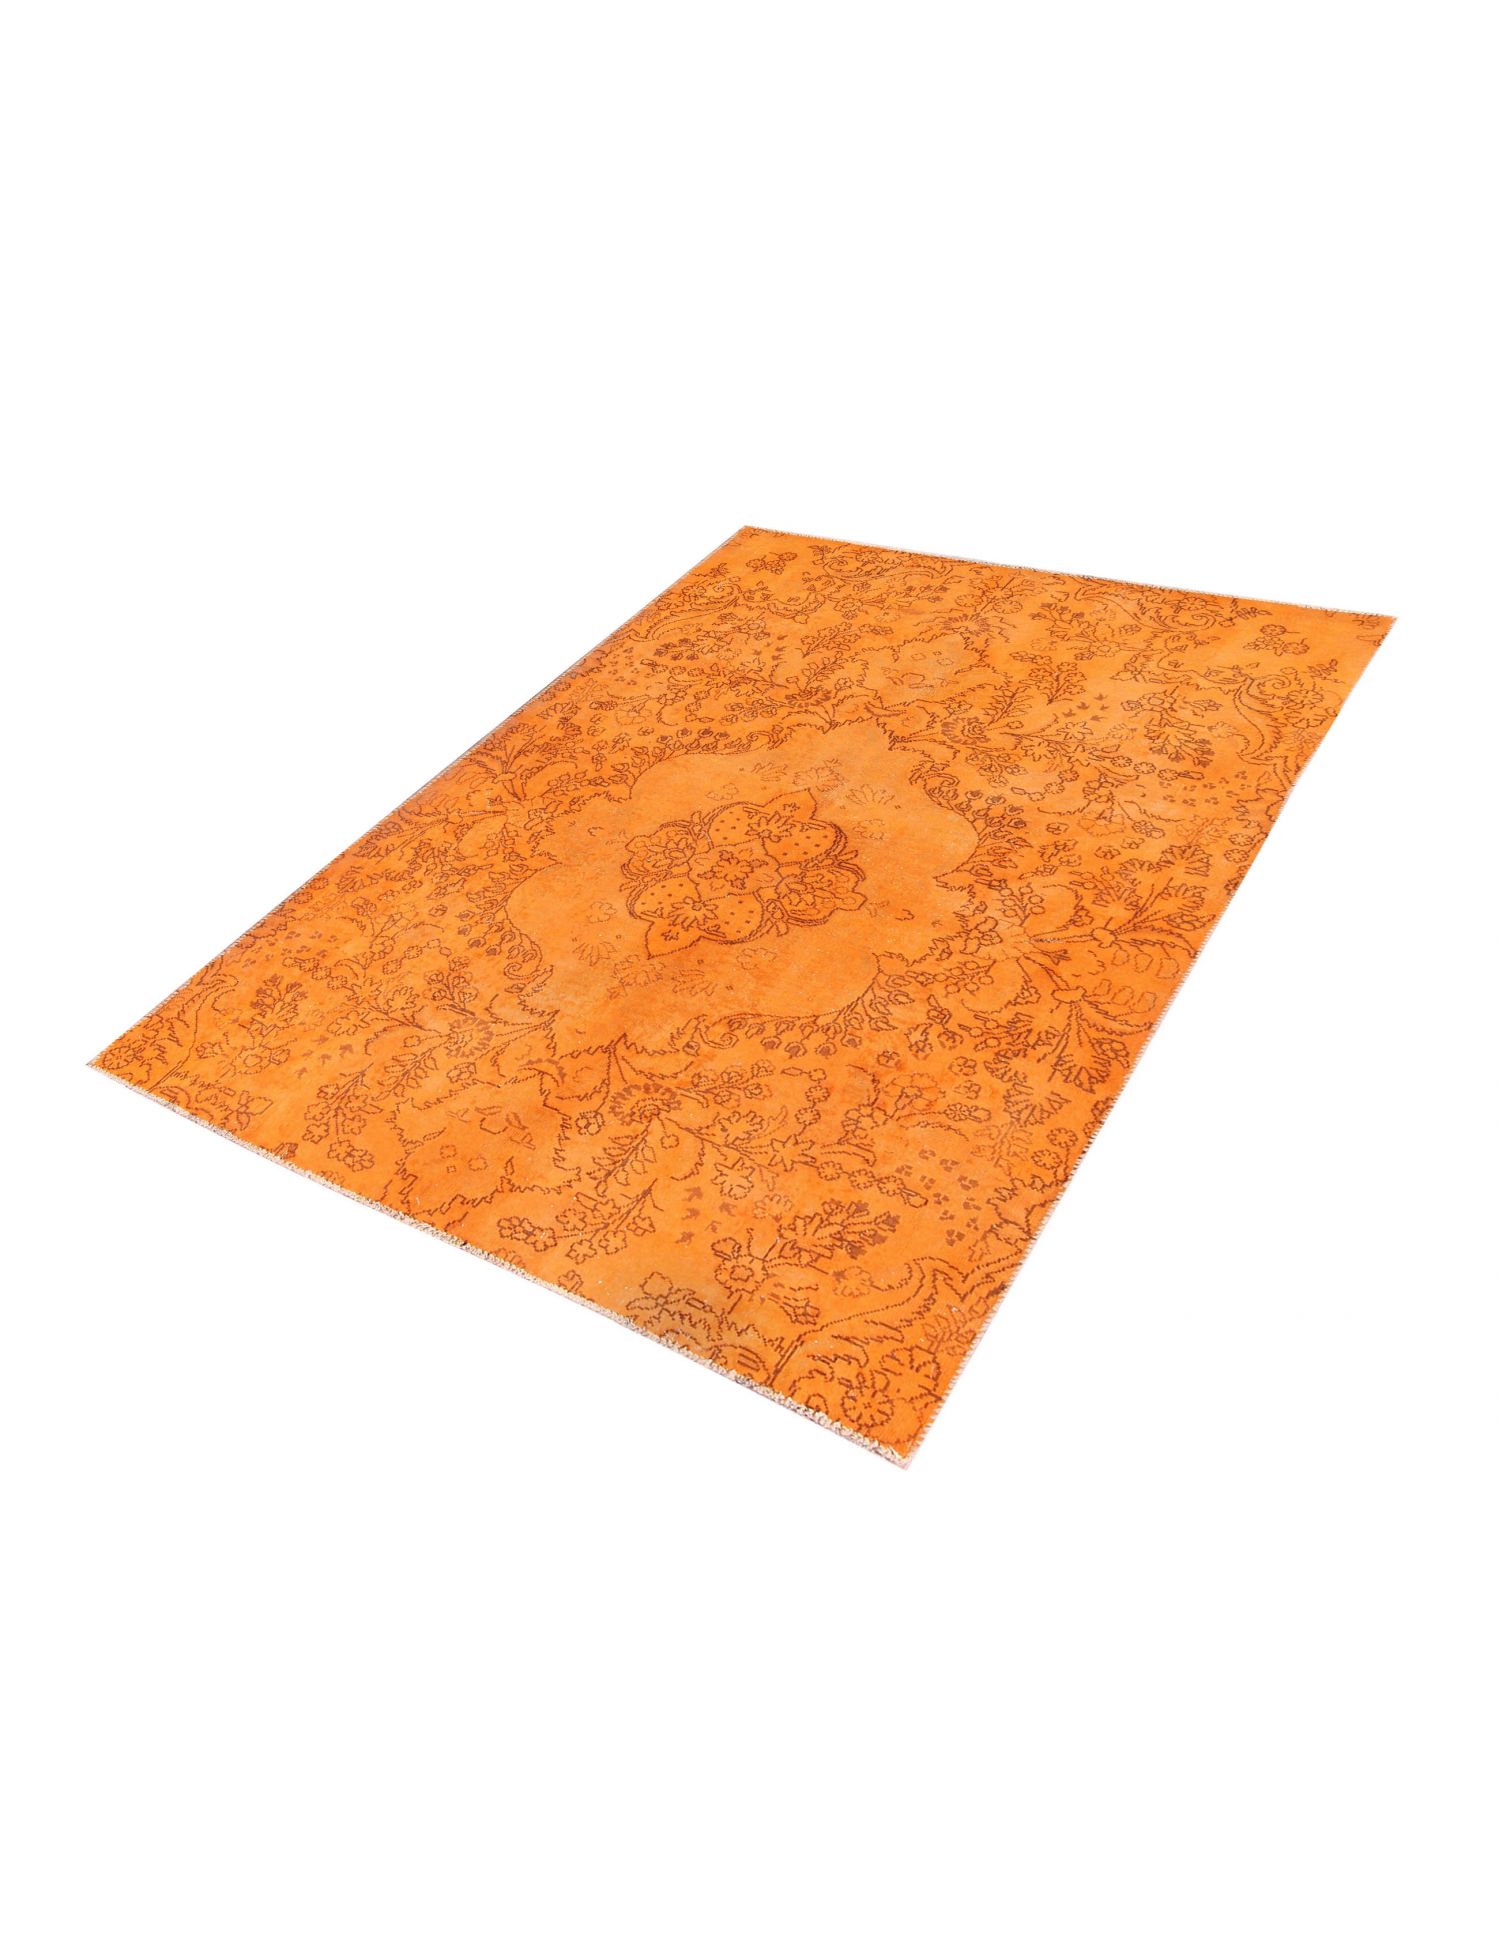 Persialaiset vintage matot  oranssi <br/>188 x 130 cm